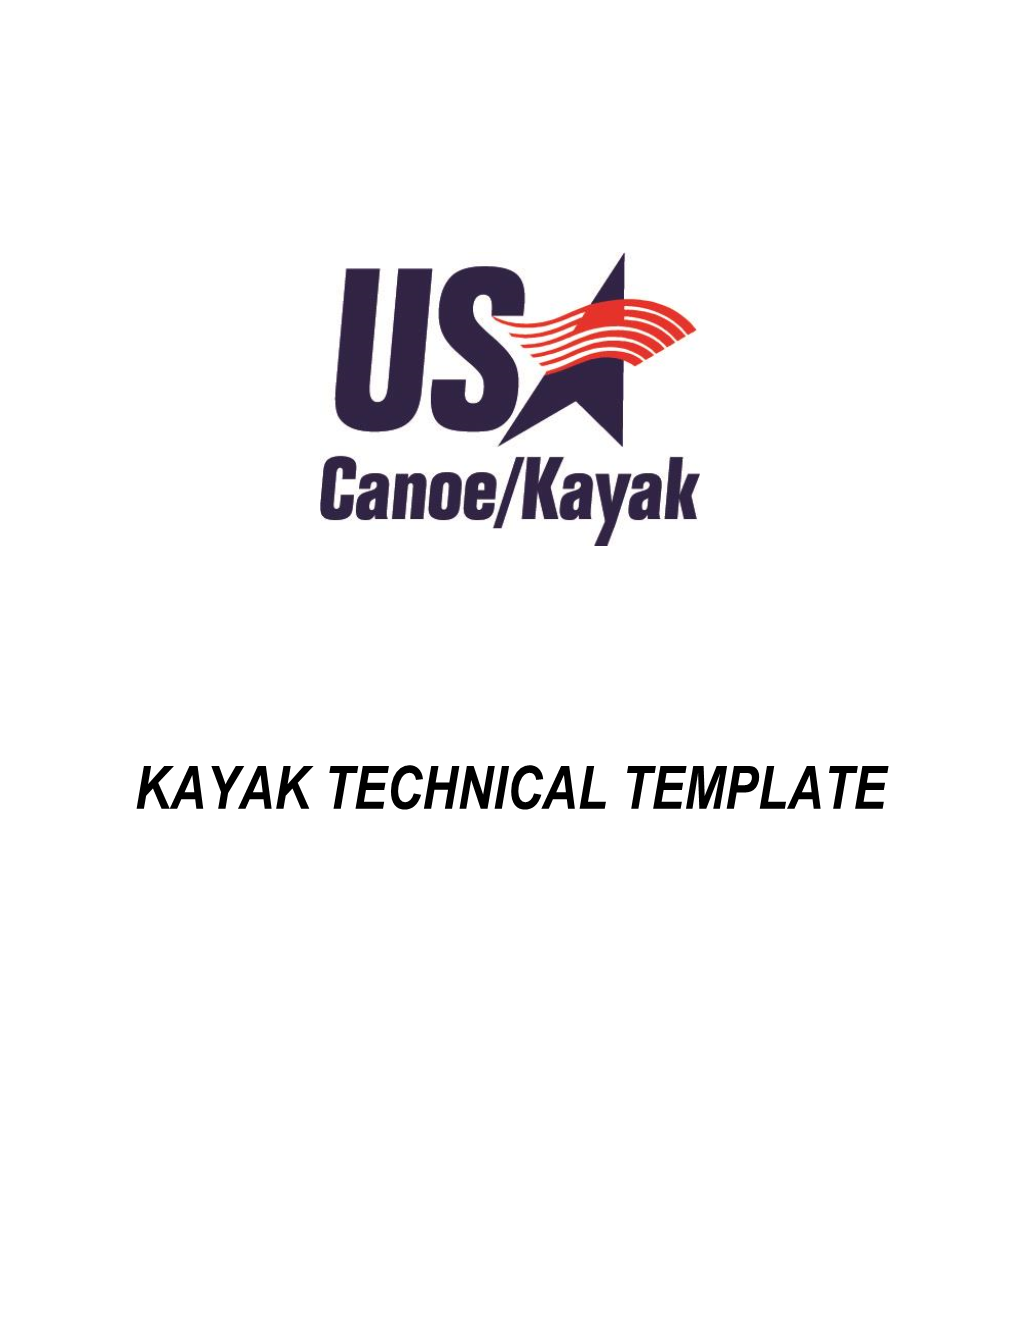 Kayak Technical Template